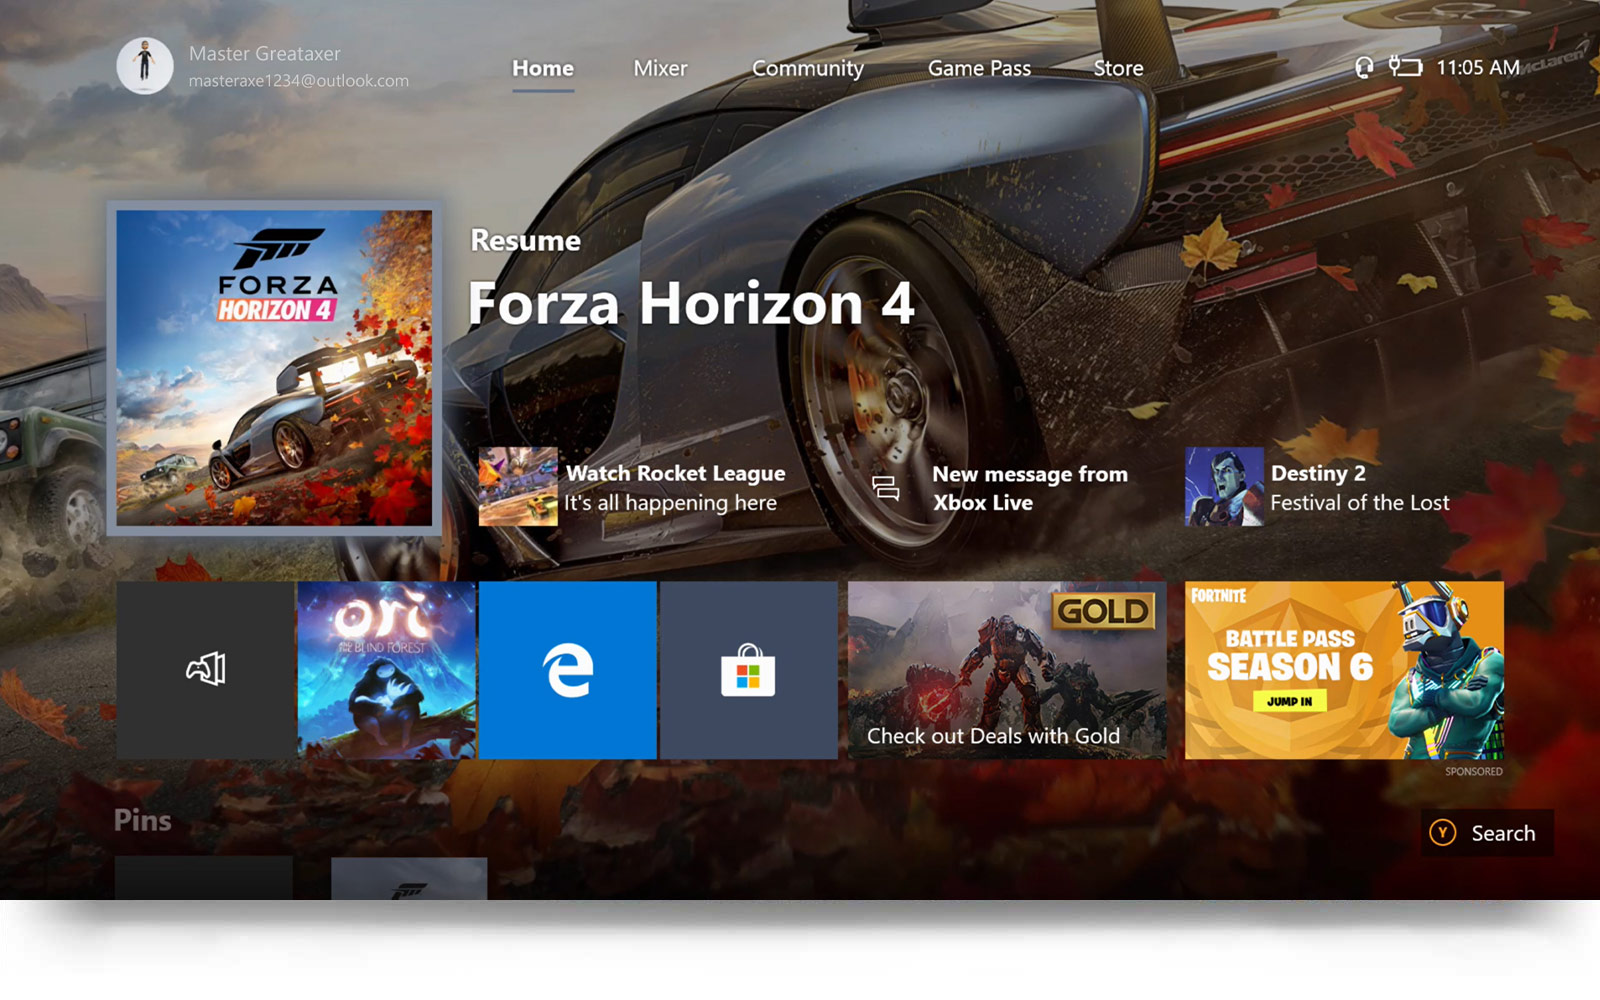 Forza 5 ps4. Forza Horizon 4 Xbox one. Диск Форза хорайзен 4 на ПС 4. Forza Horizon 4 на плейстейшен 4. Forza Horizon 4 Xbox one ps4.